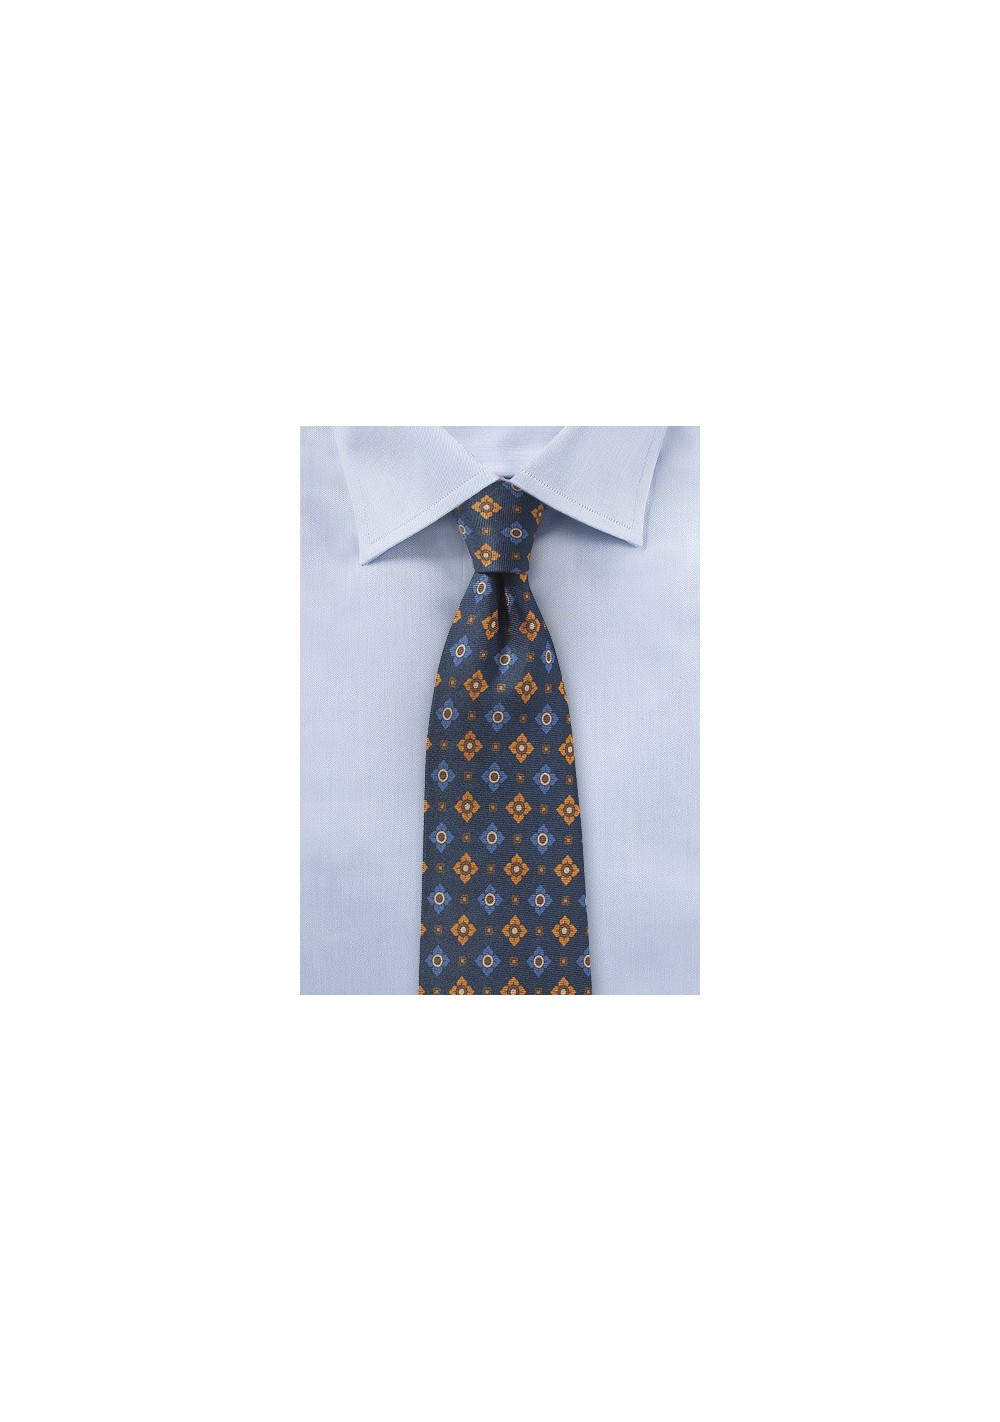 Vintage Print Tie in Navy and Orange